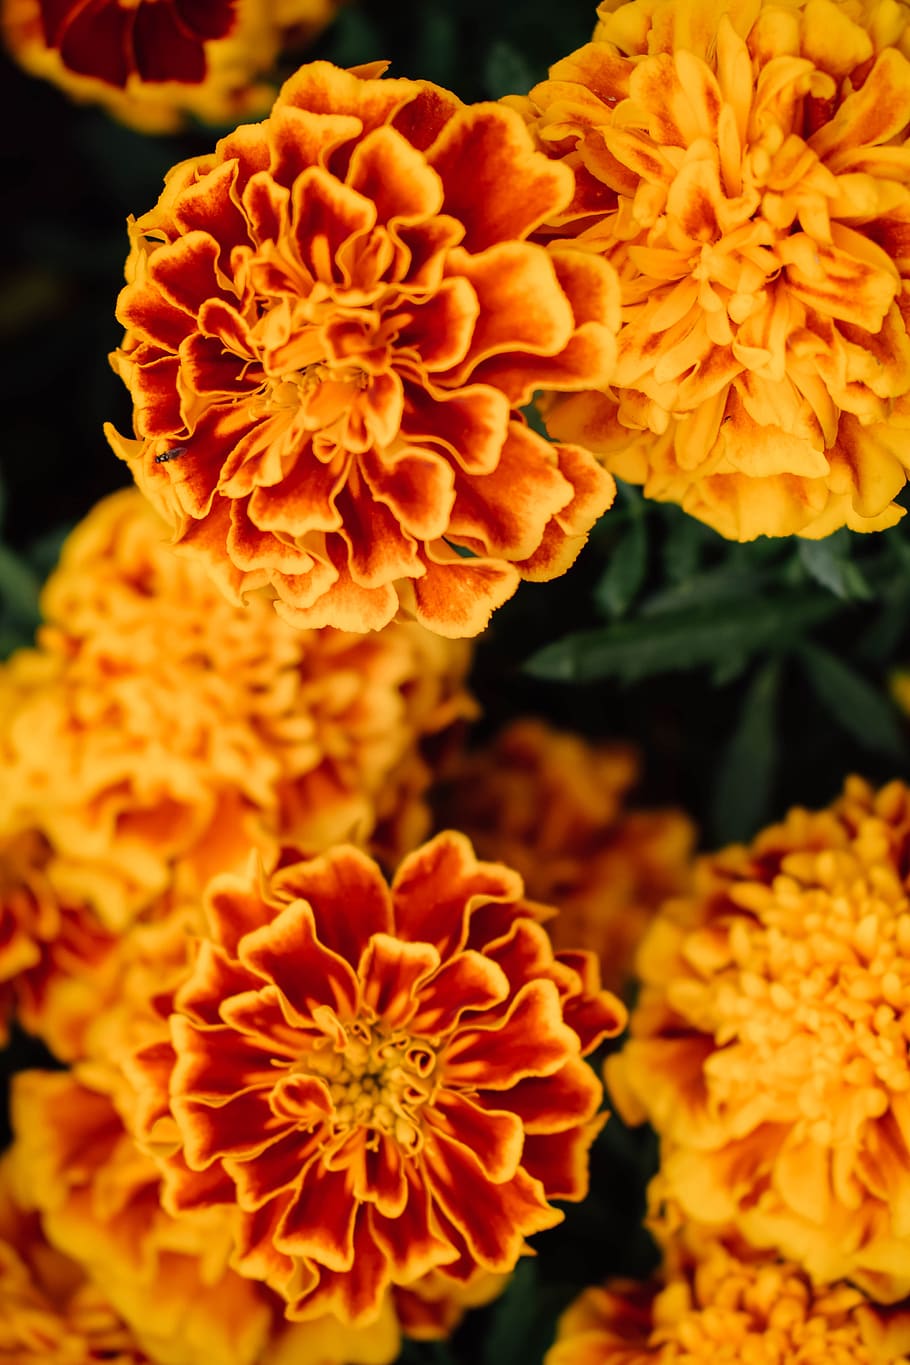 marigold, flower, orange, plant, garden, flower bed, yellow, bright, summer, petals